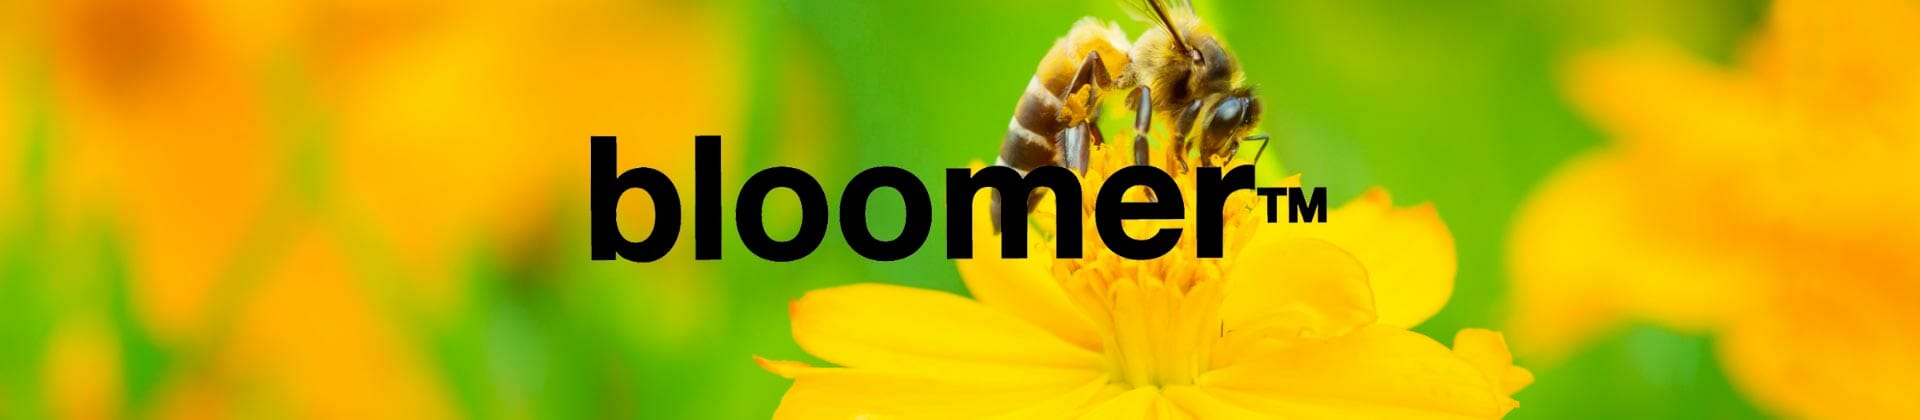 Entdecke bloomer Filtertips aus den USA: Wie du beim Rauchen die Umwelt schonst und Bienen unterstützt